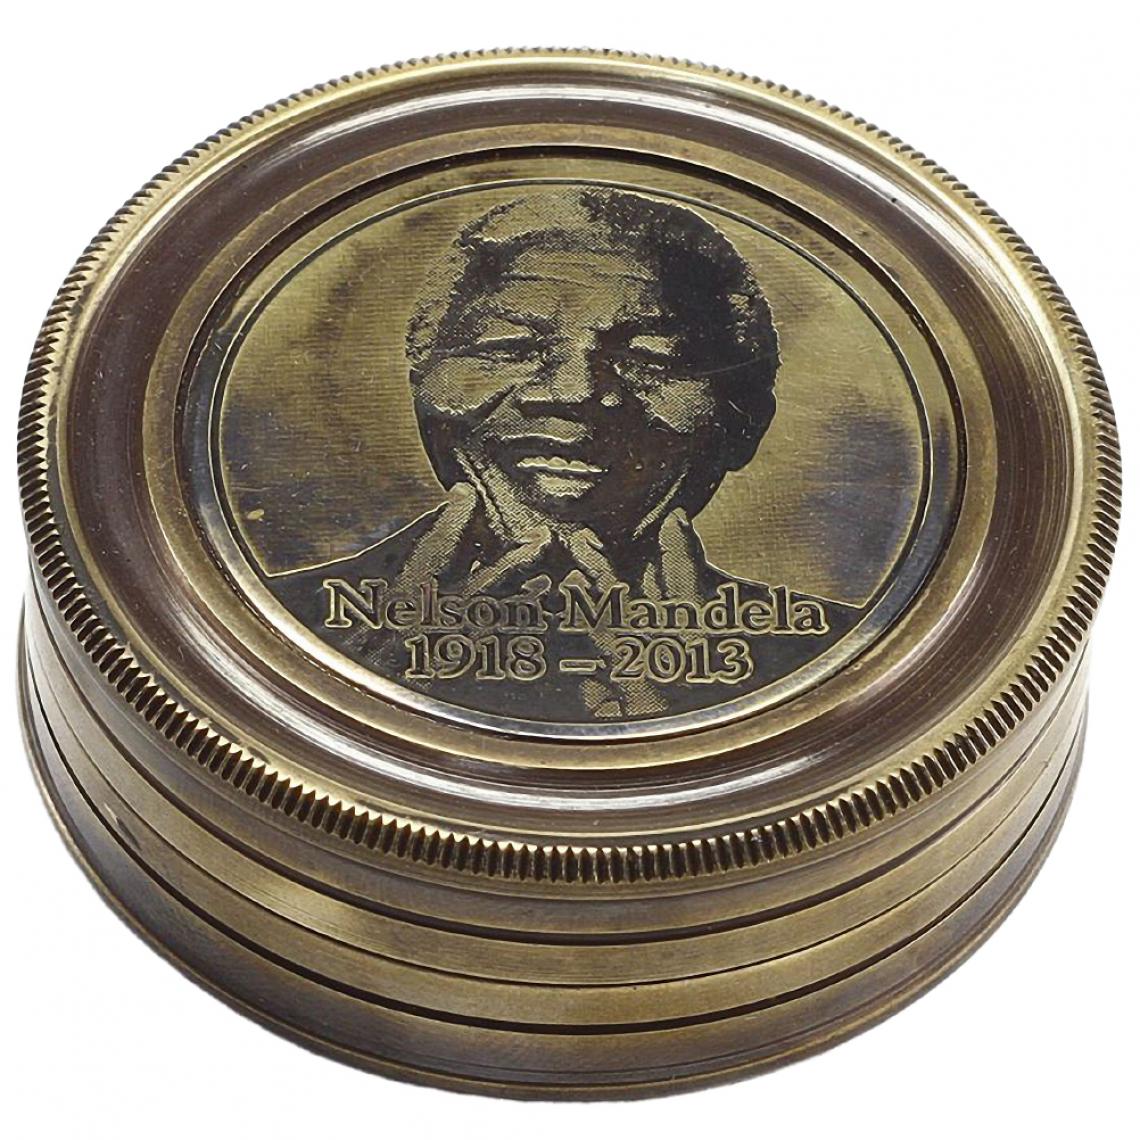 Signe - Boite boussole en laiton ornementale Nelson Mandela - Petite déco d'exterieur